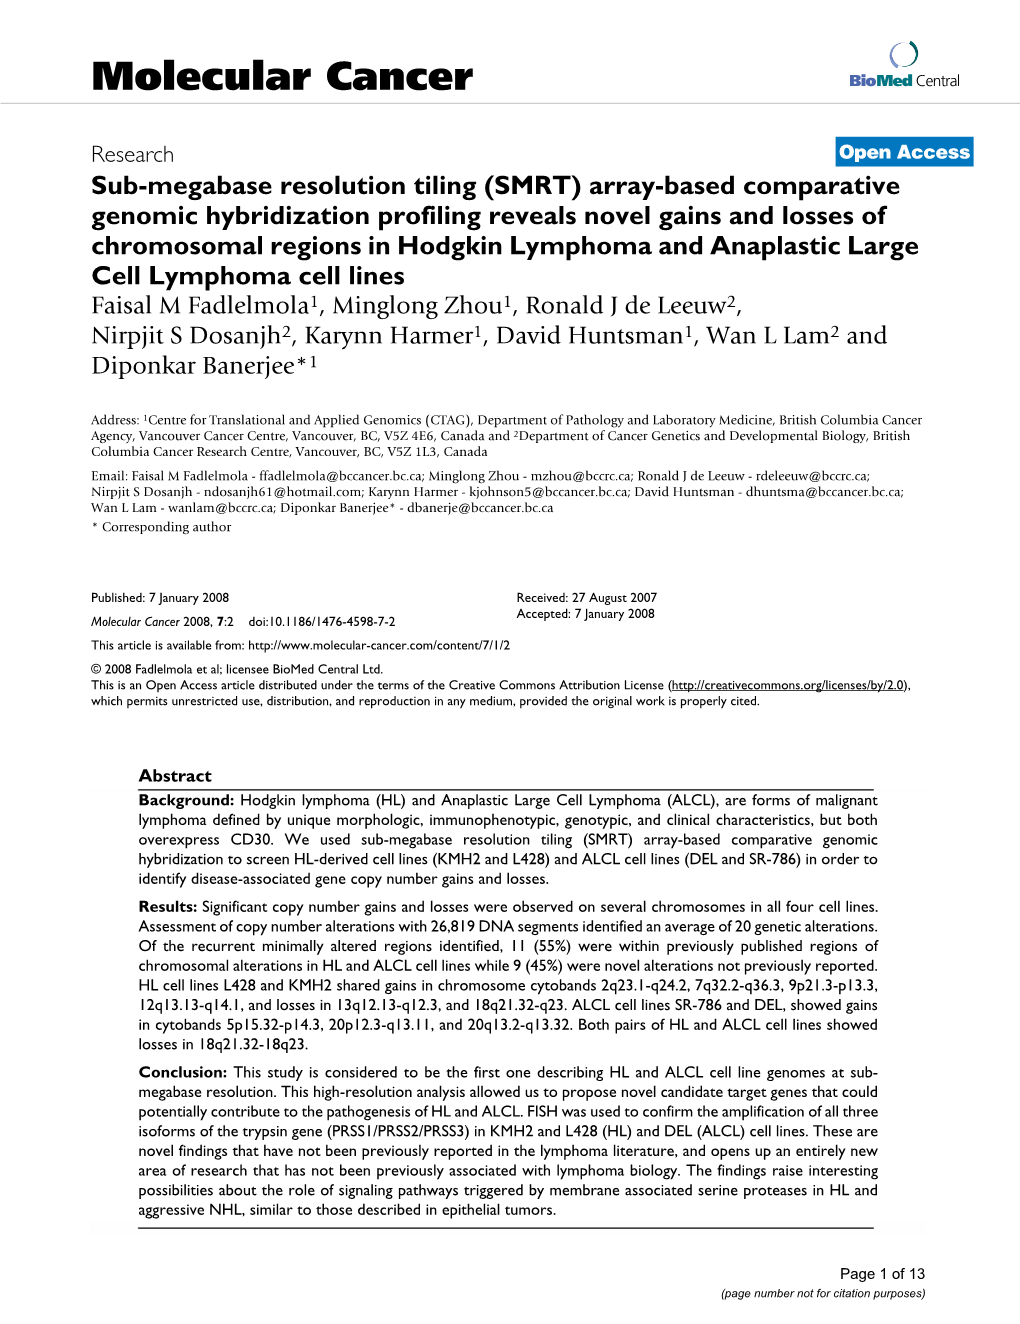 Sub-Megabase Resolution Tiling (SMRT) Array-Based Comparative